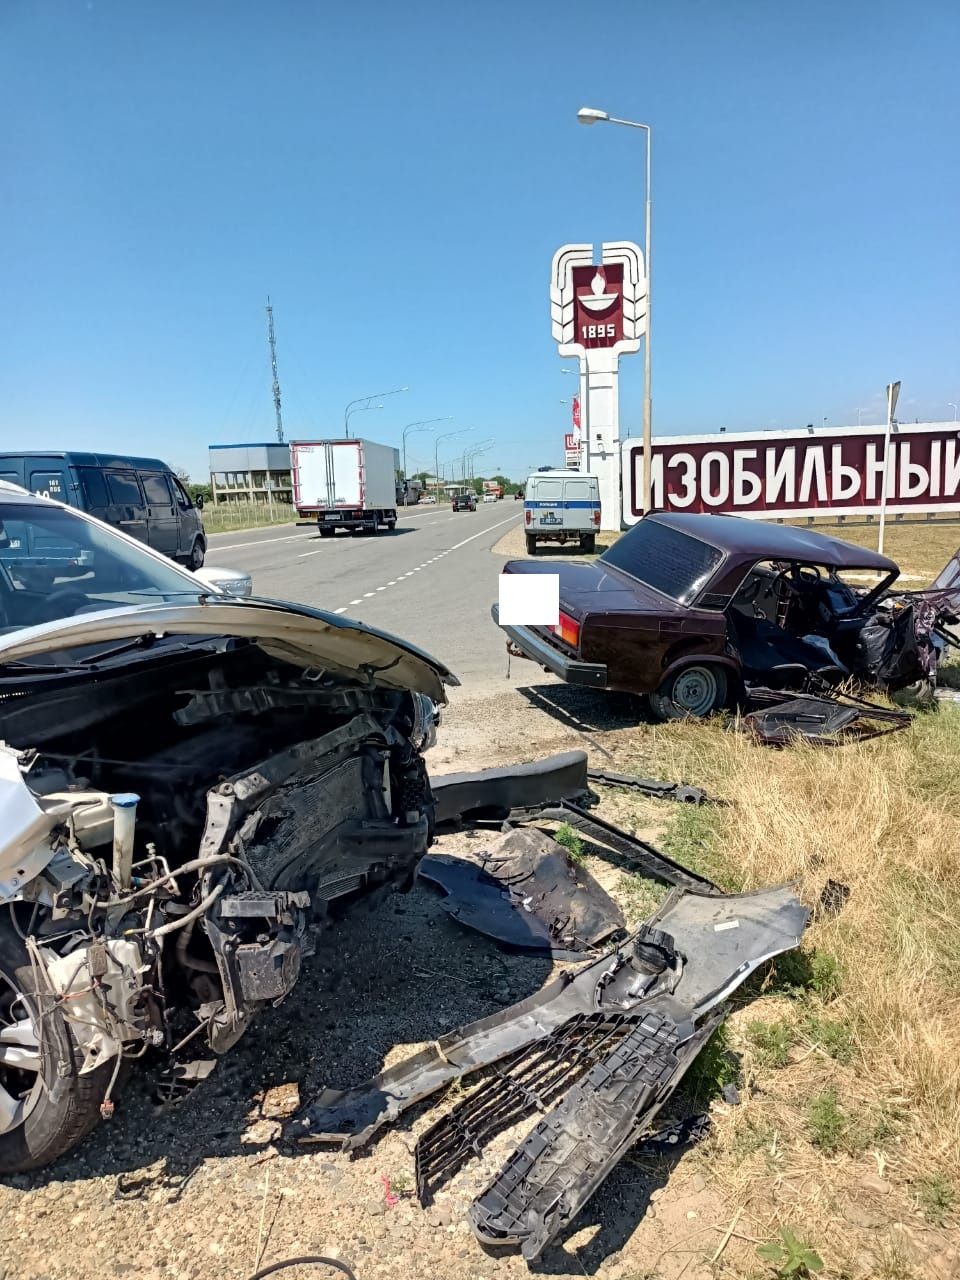 Пятеро взрослых и трое детей пострадали в аварии на Ставрополье